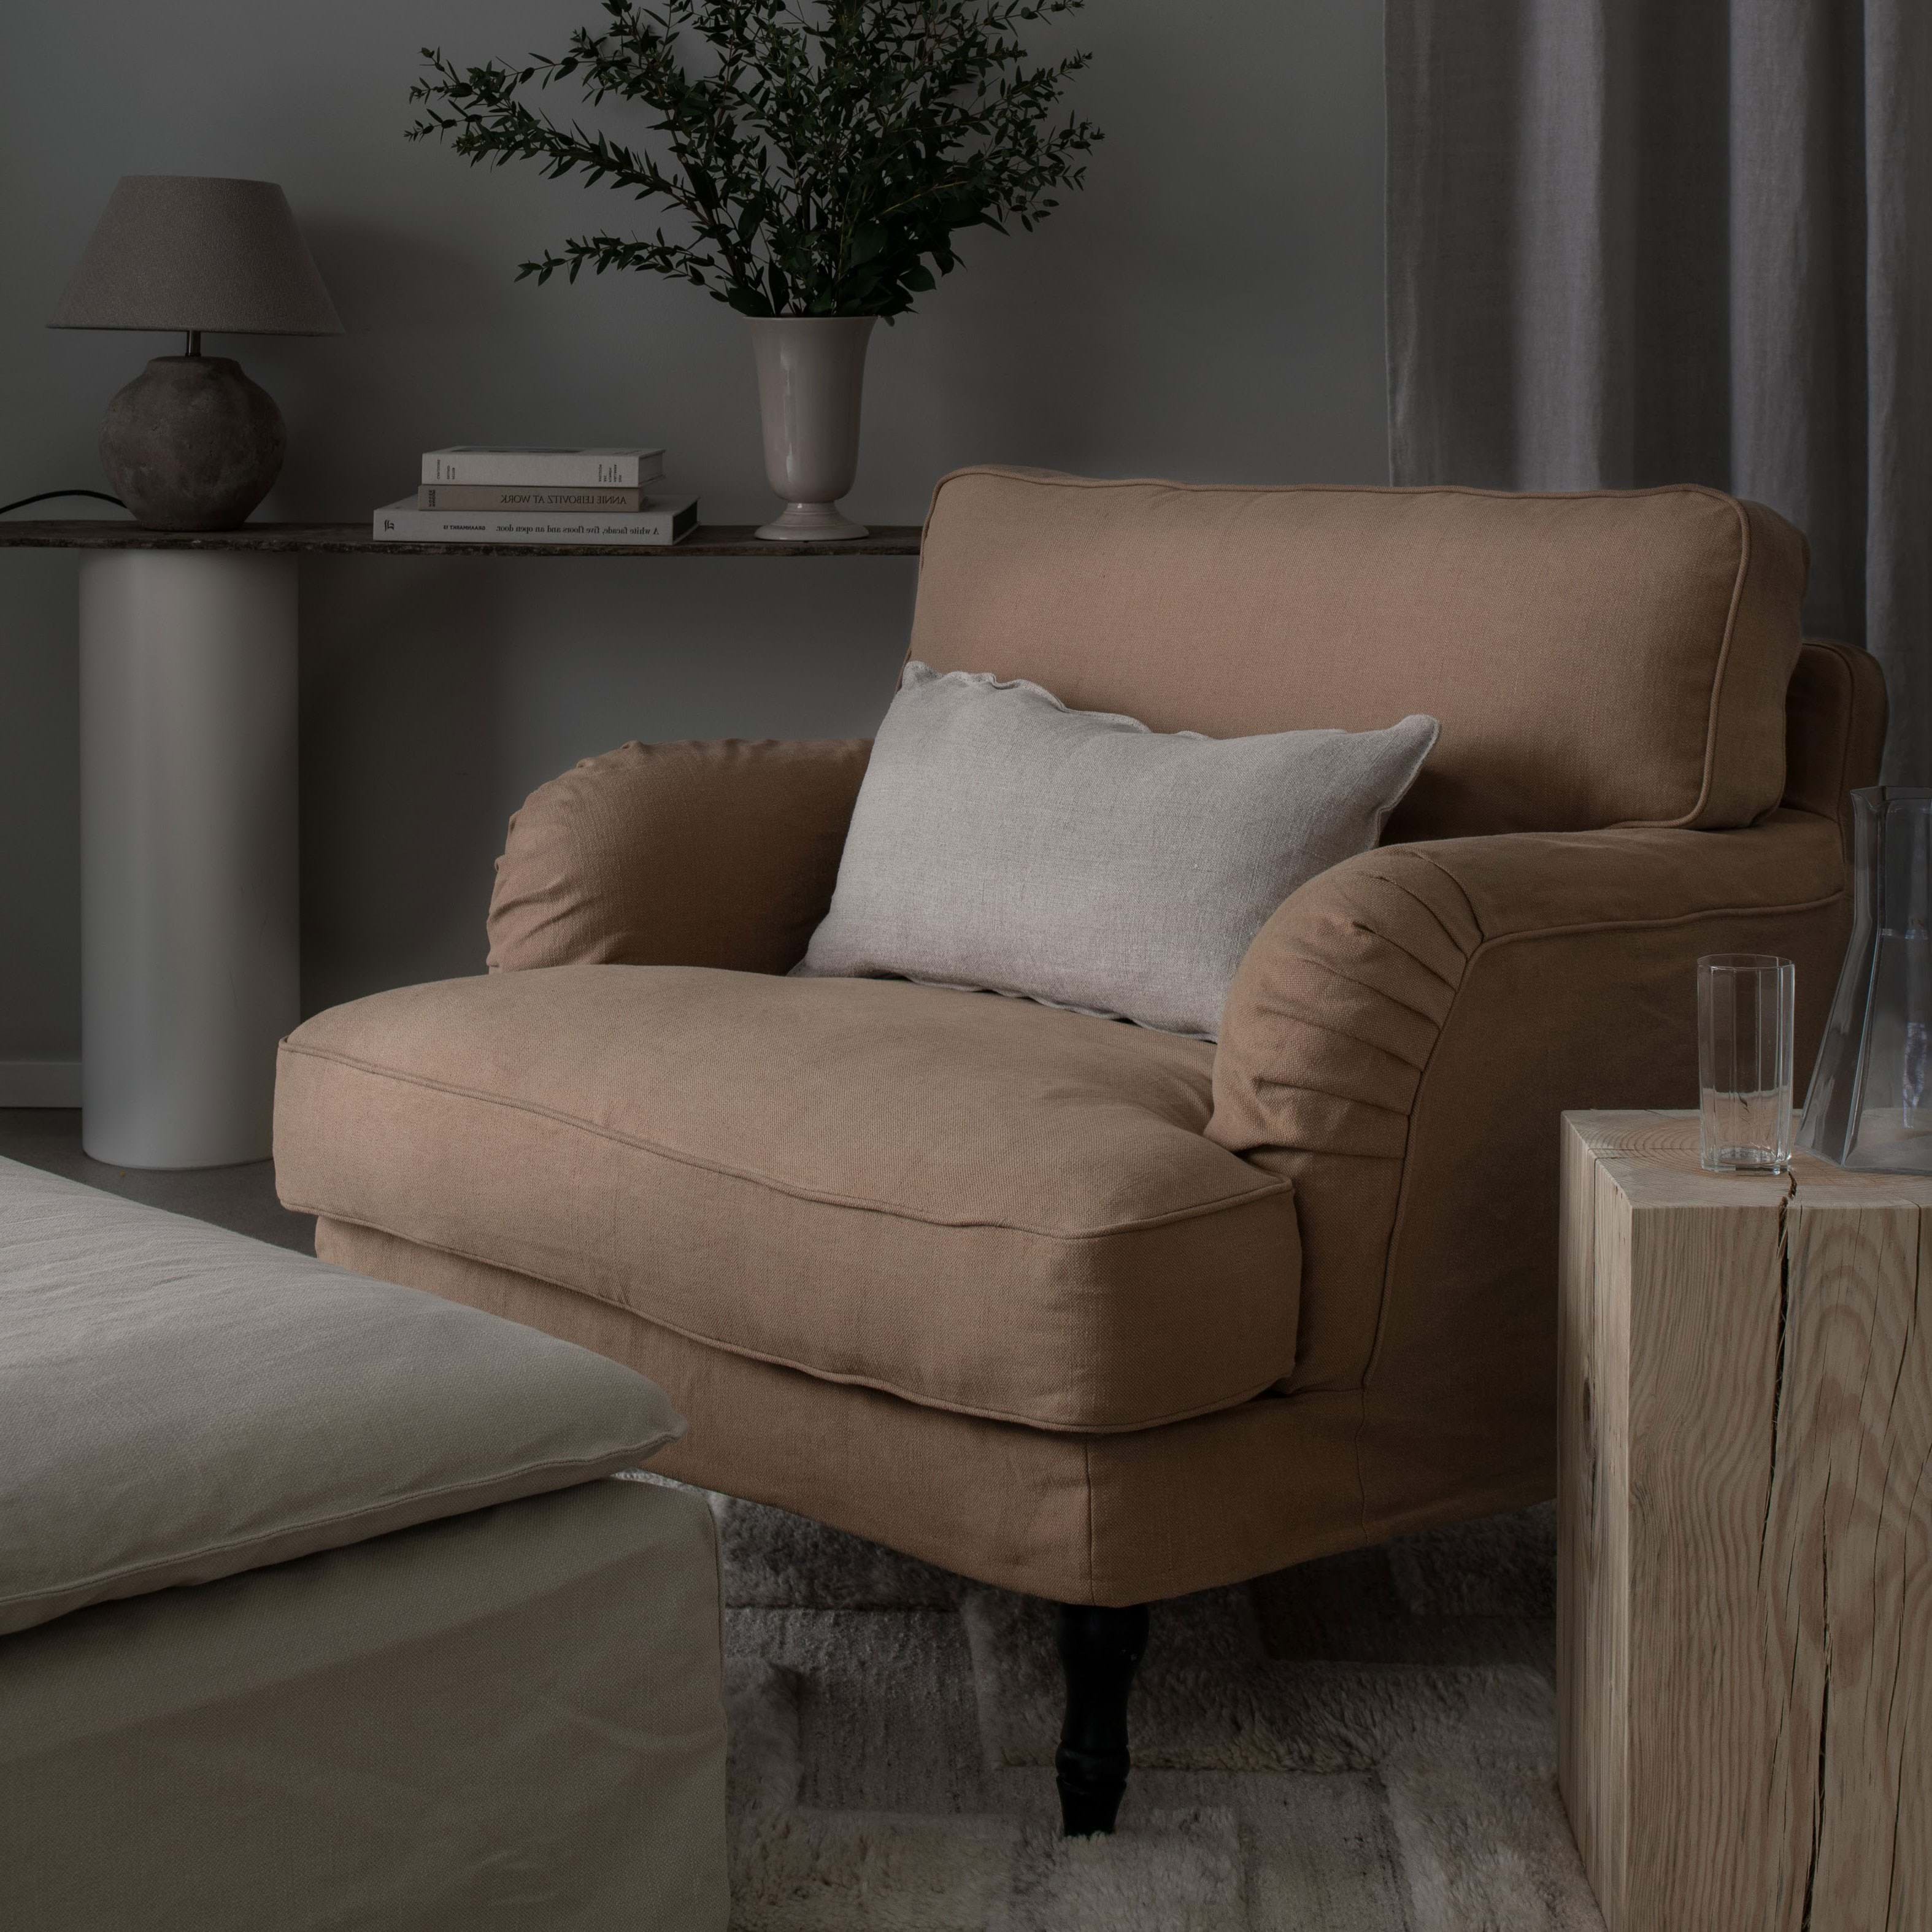 Verkoper Lauw Wonderbaarlijk Designhoezen voor fauteuils en leunstoelen van IKEA | Bemz